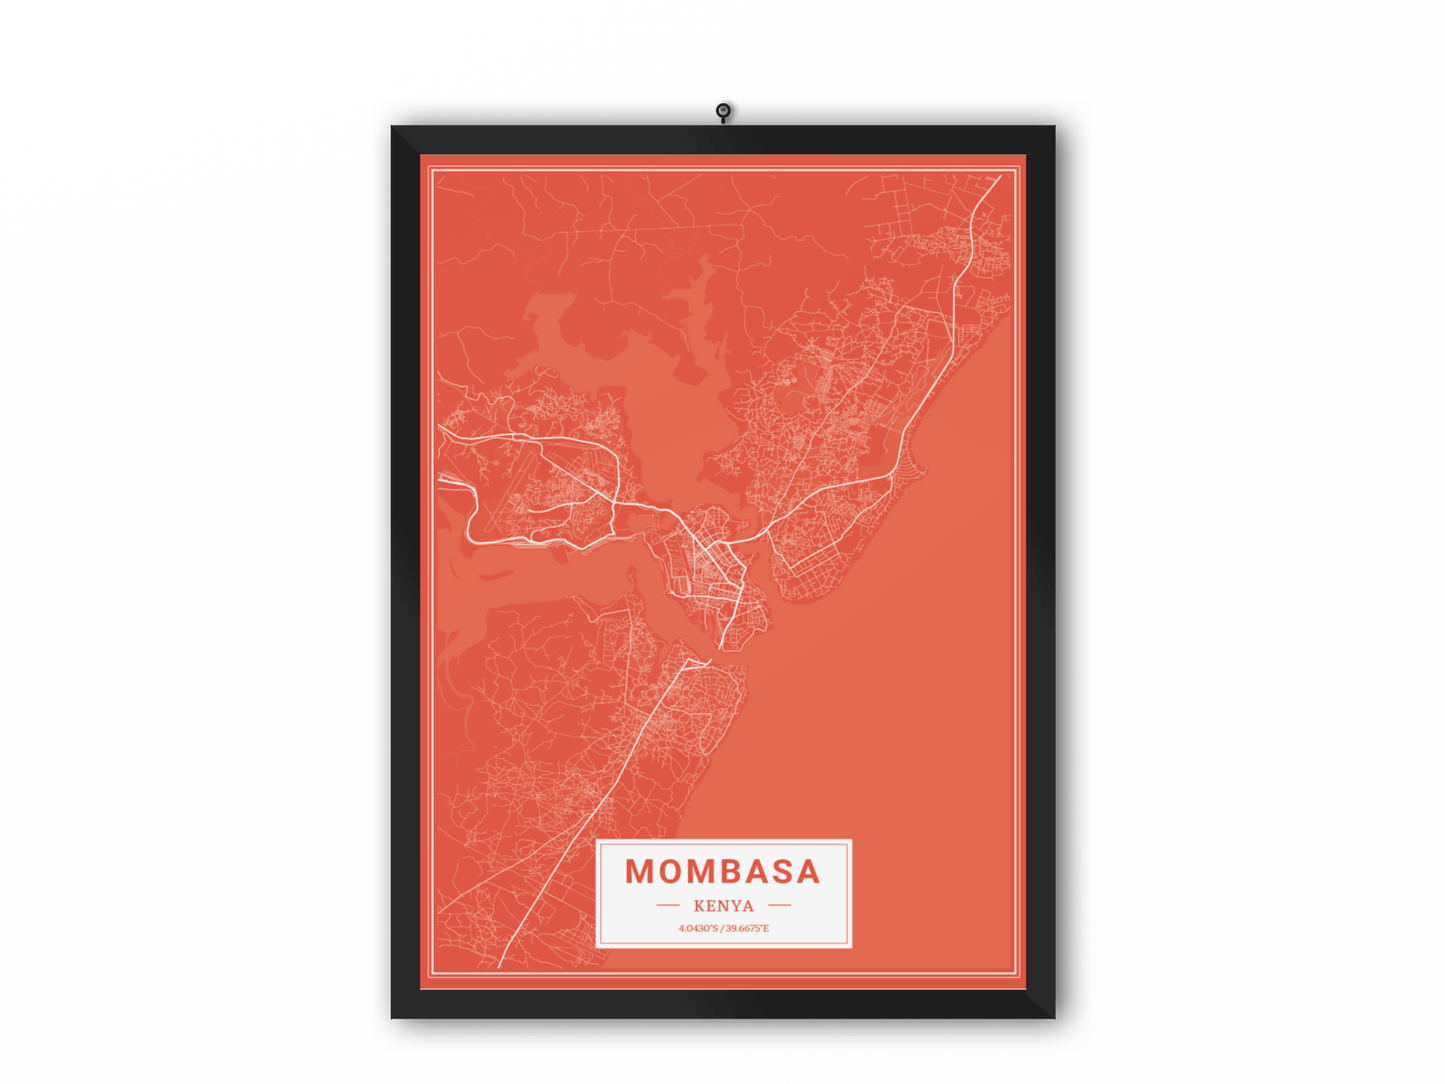 Mobassa - Kenya Map Print